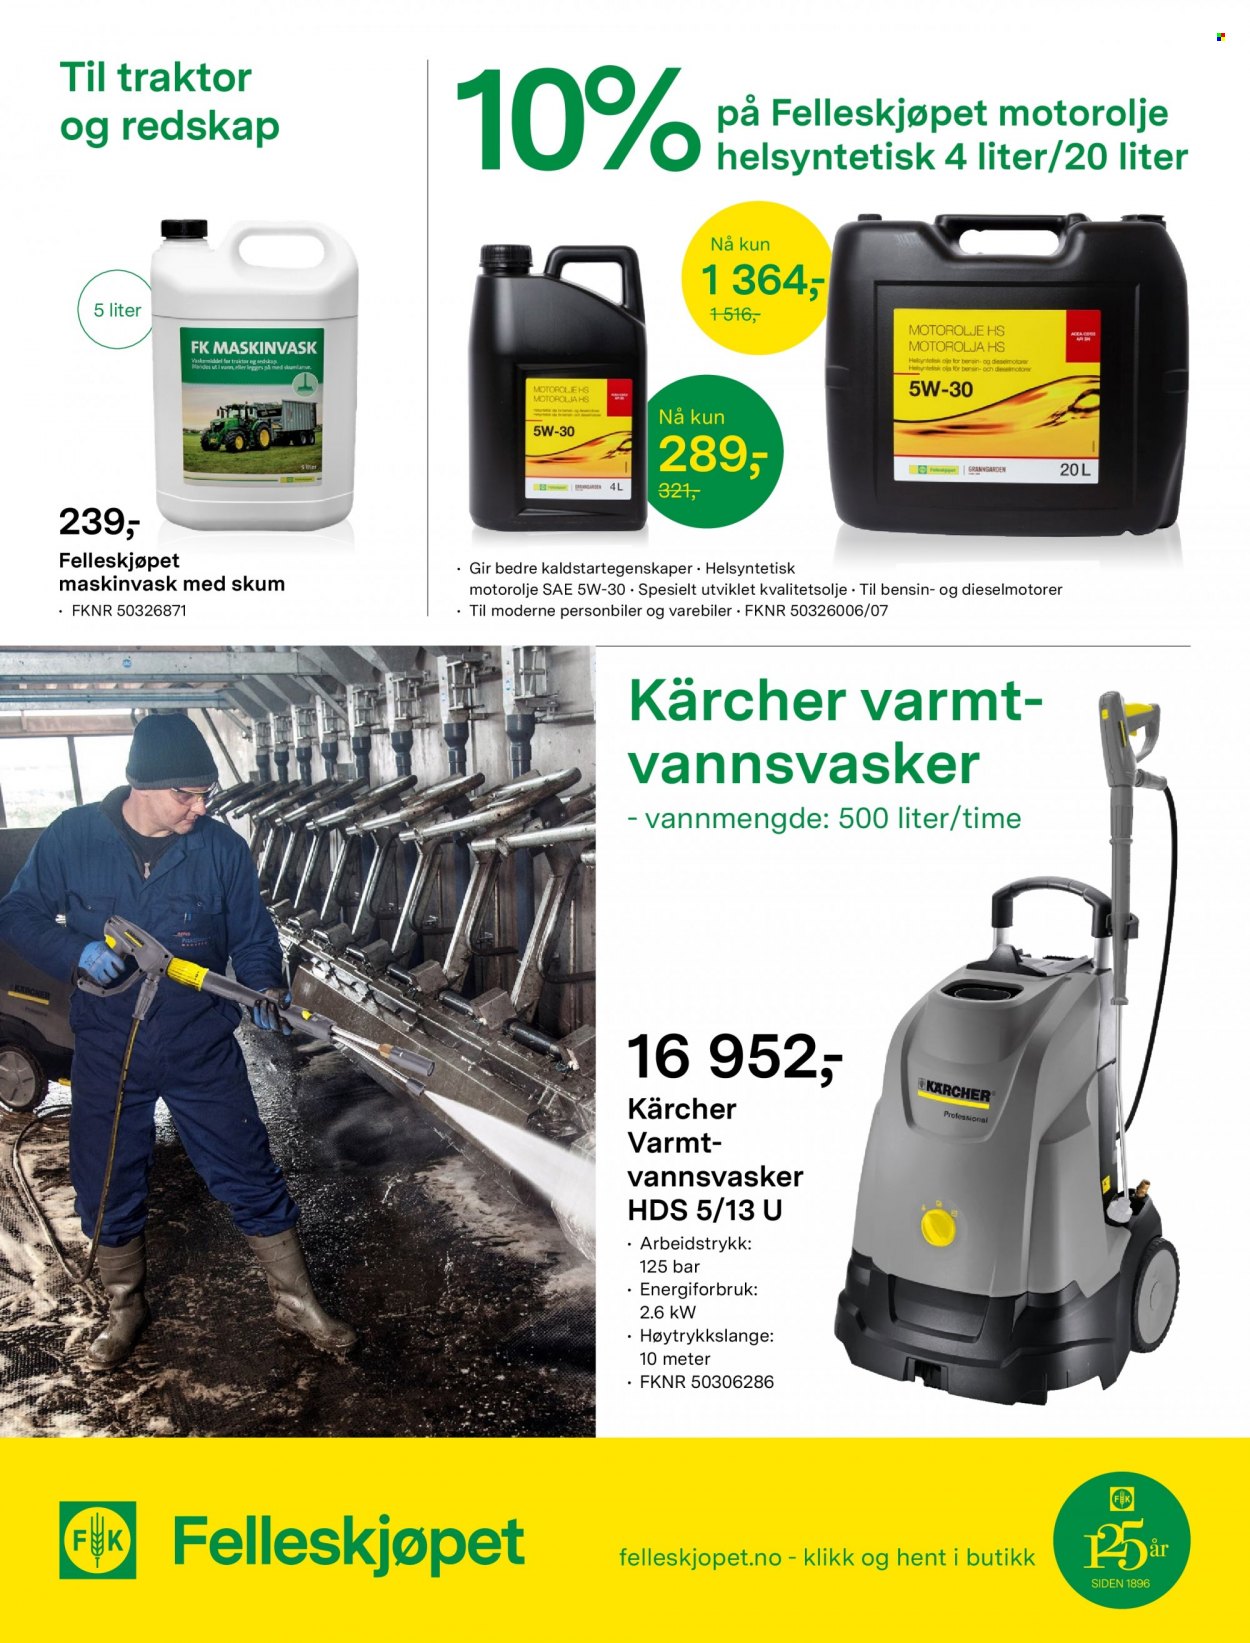 thumbnail - Kundeavis Felleskjøpet - 4.10.2021 - 17.10.2021 - Produkter fra tilbudsaviser - vaskemiddel, redskap, traktor. Side 5.